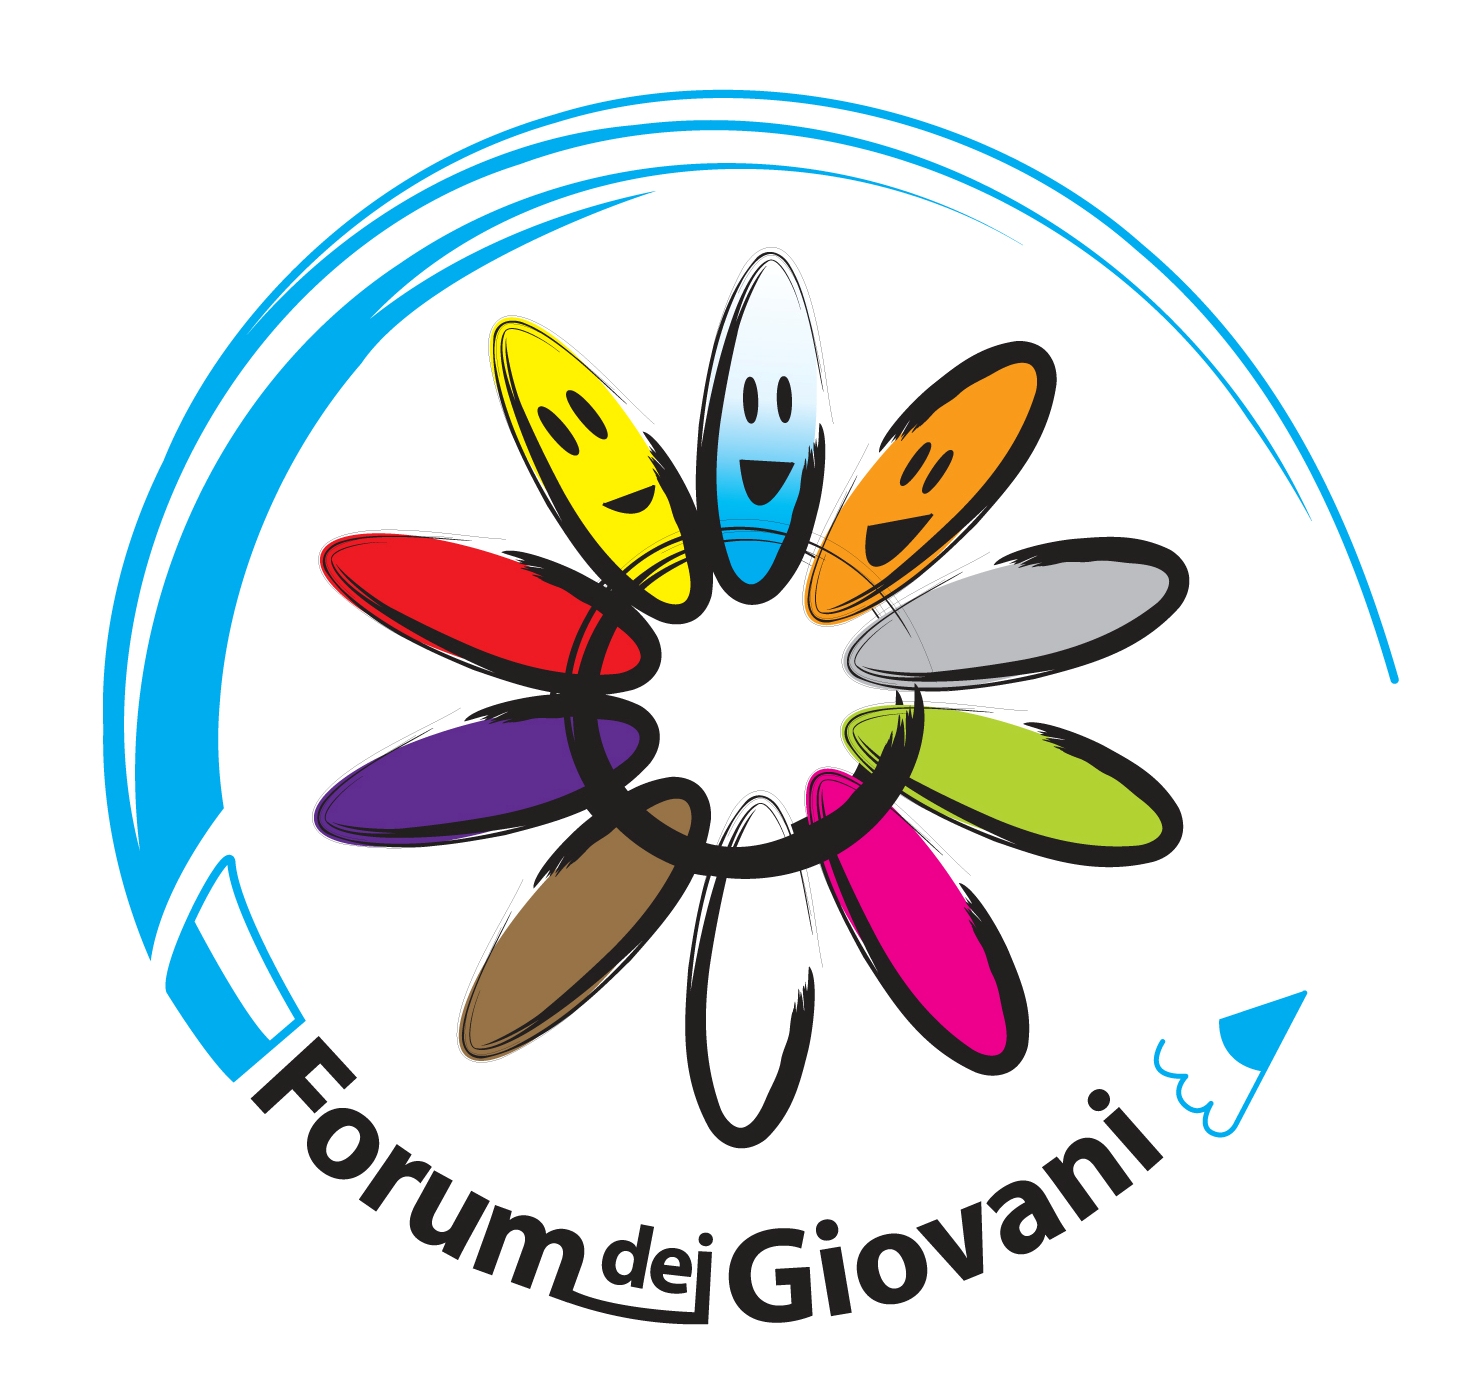 logo-ufficiale-forum-dei-giovani.jpg